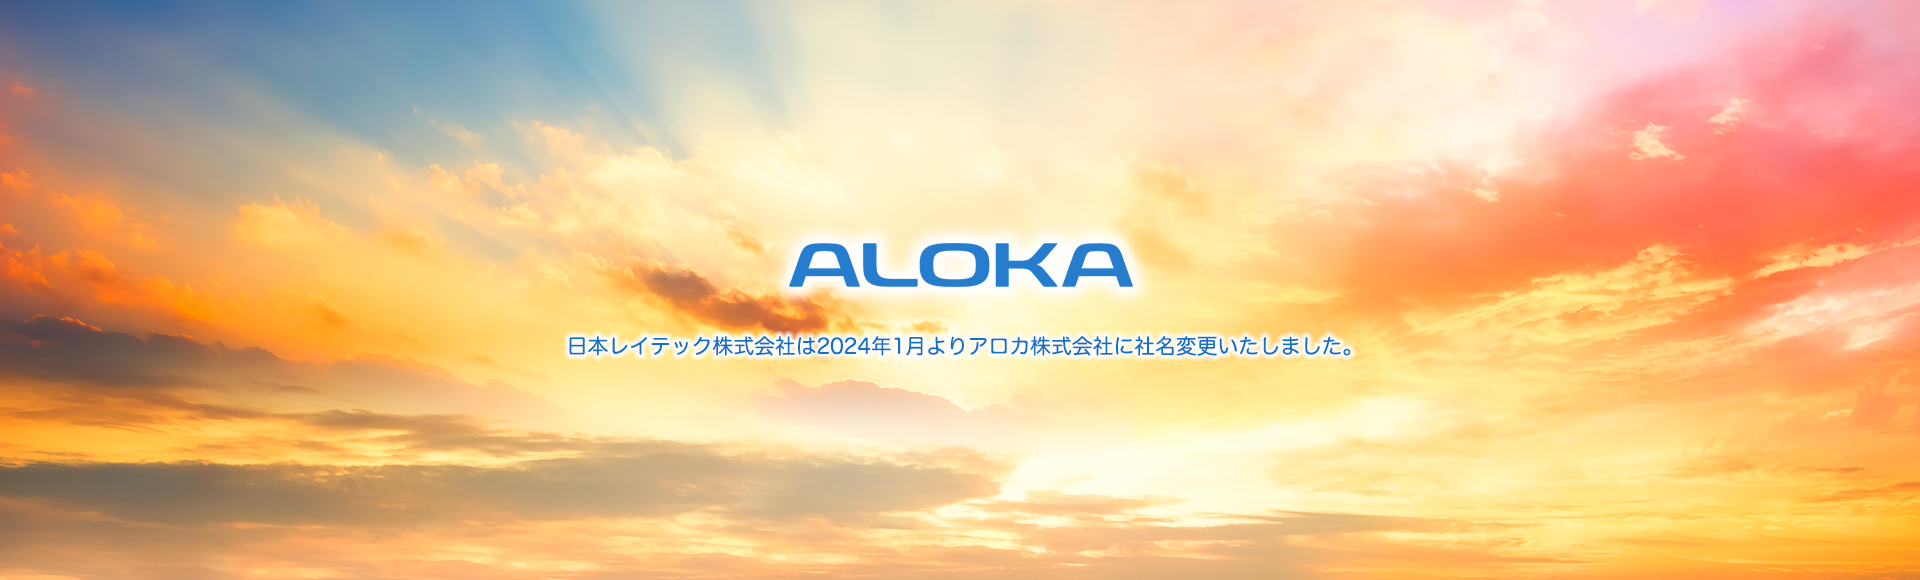 アロカ株式会社への社名変更